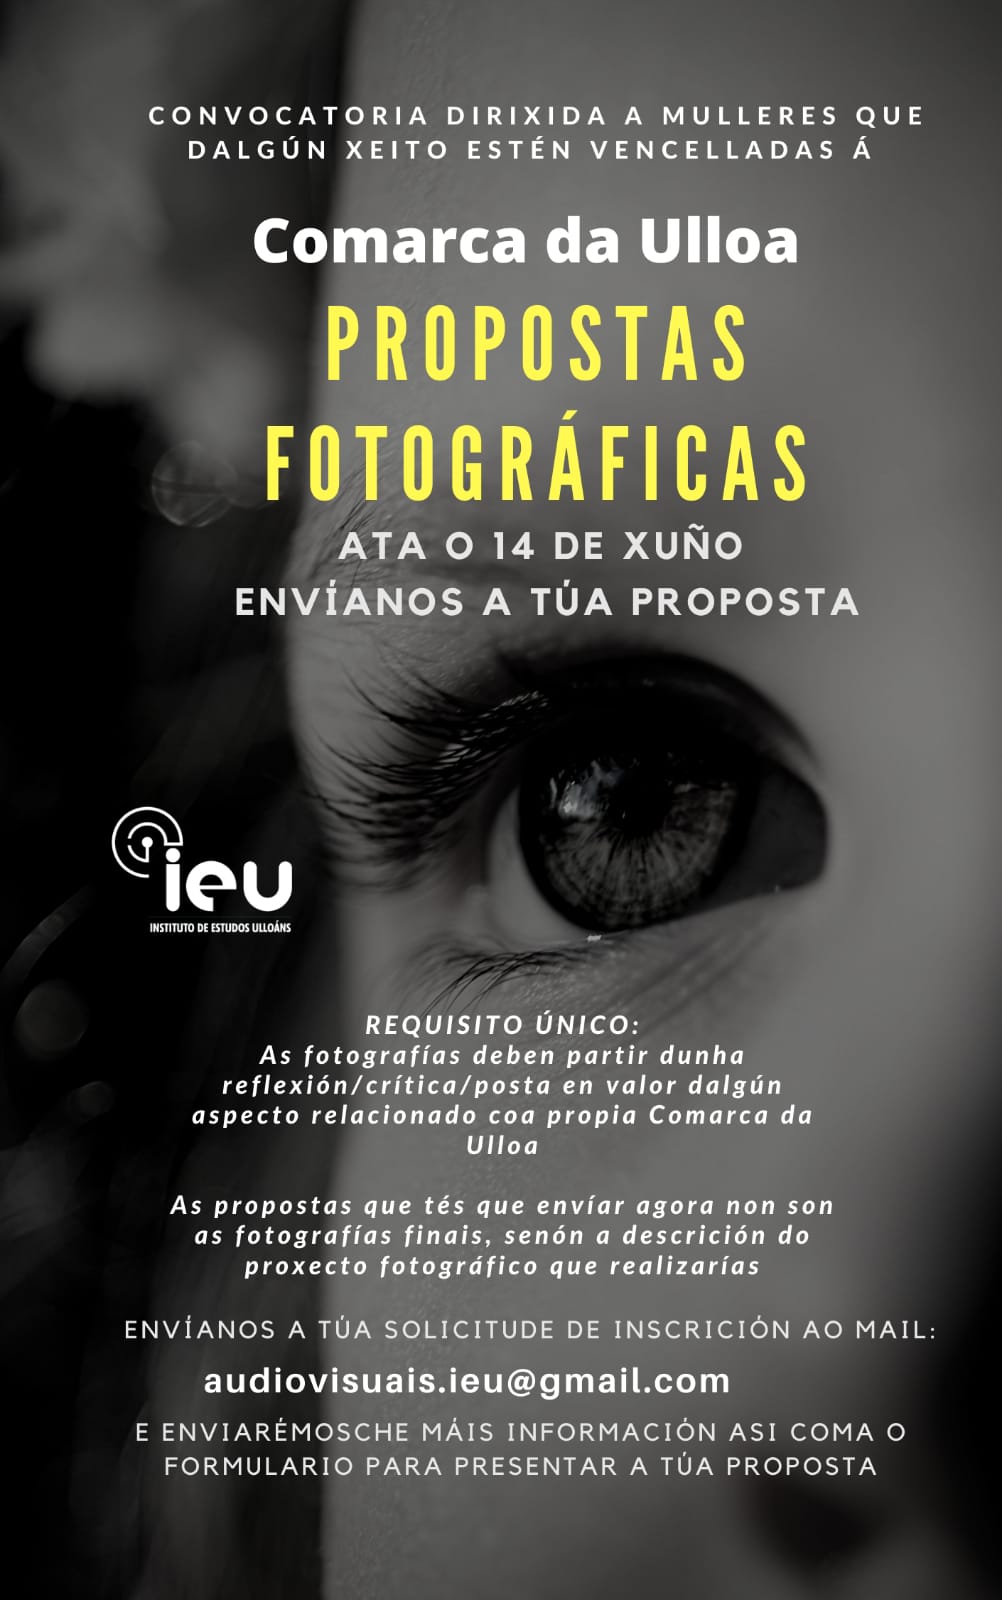 Propostas fotográficas na Ulloa, Patricia Coucheiro, Instituto de Estudos Ulloáns